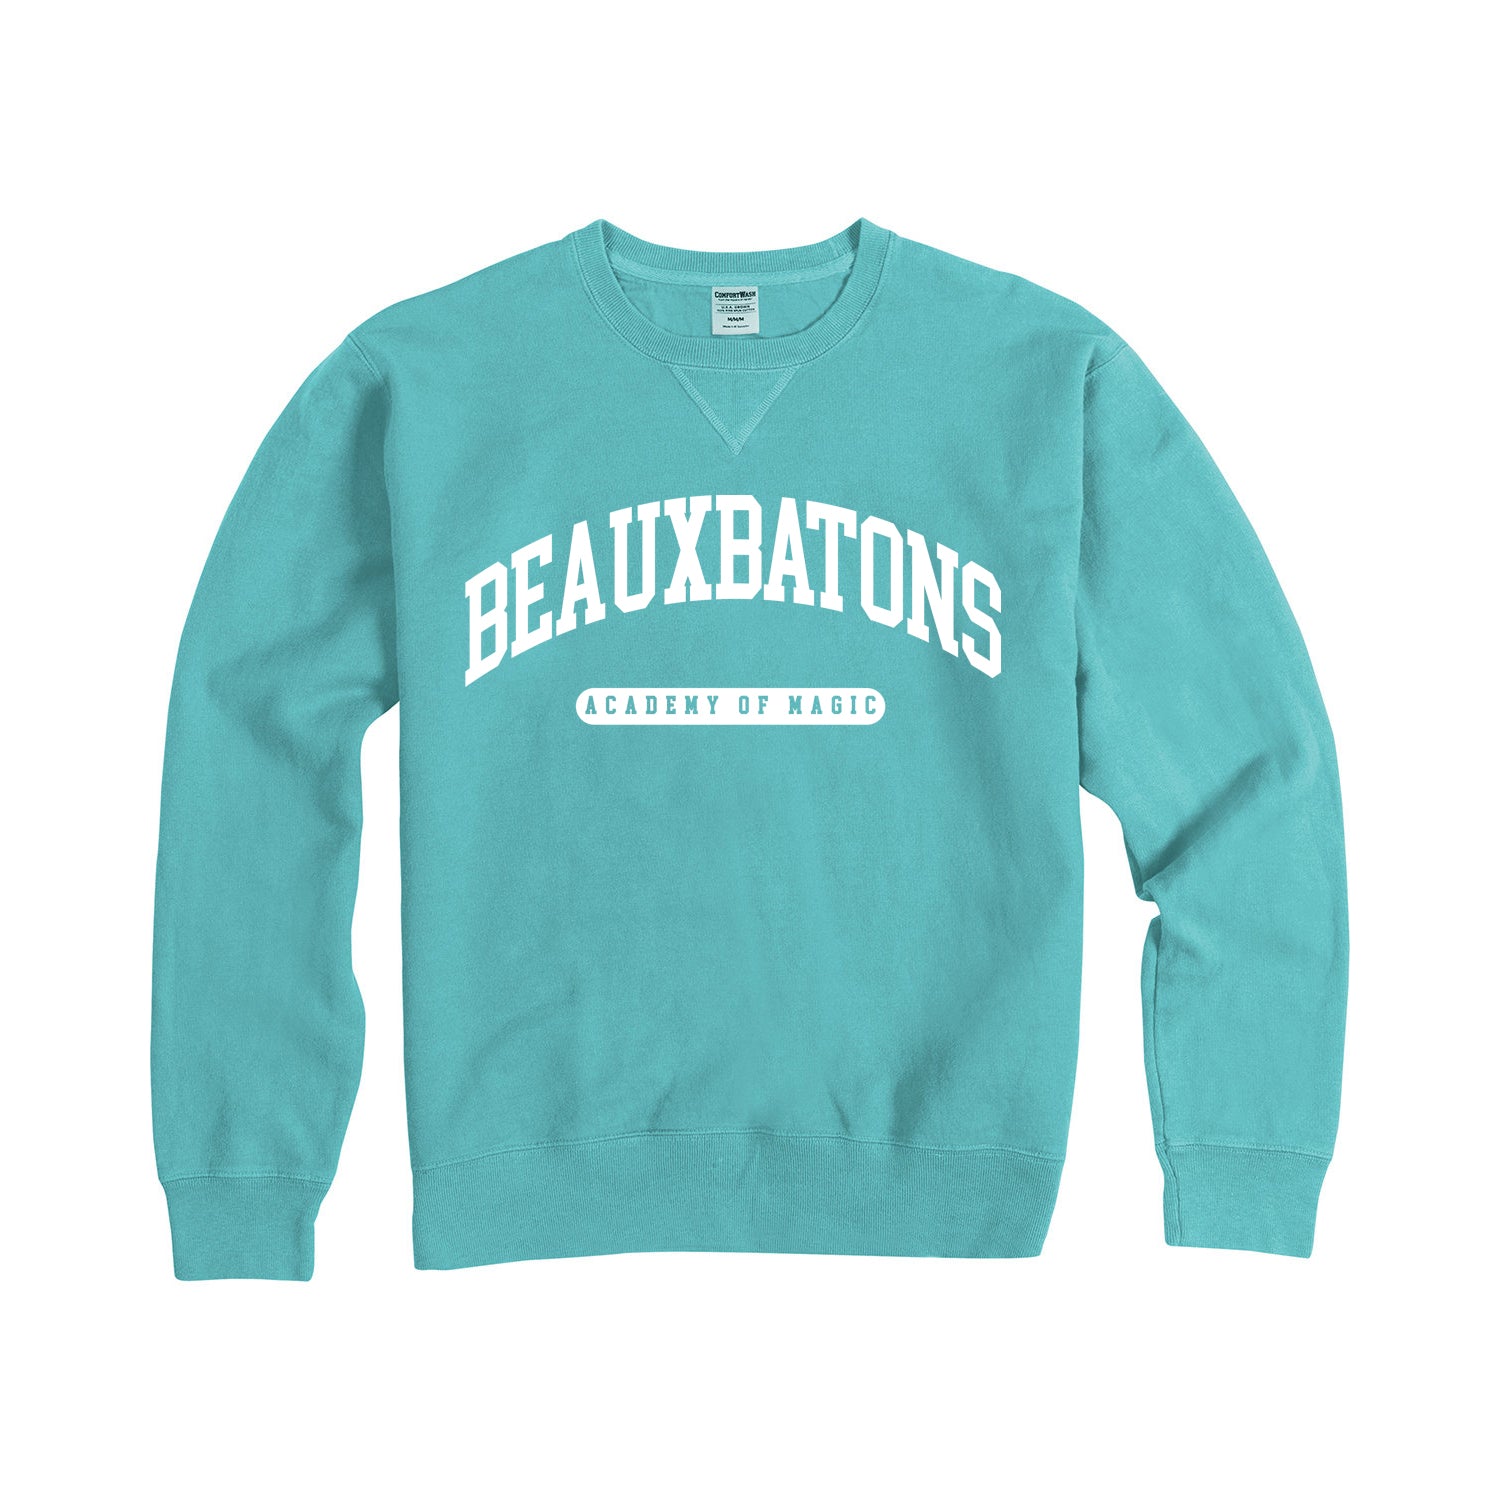 Beauxbatons Garment Dyed Sweatshirt